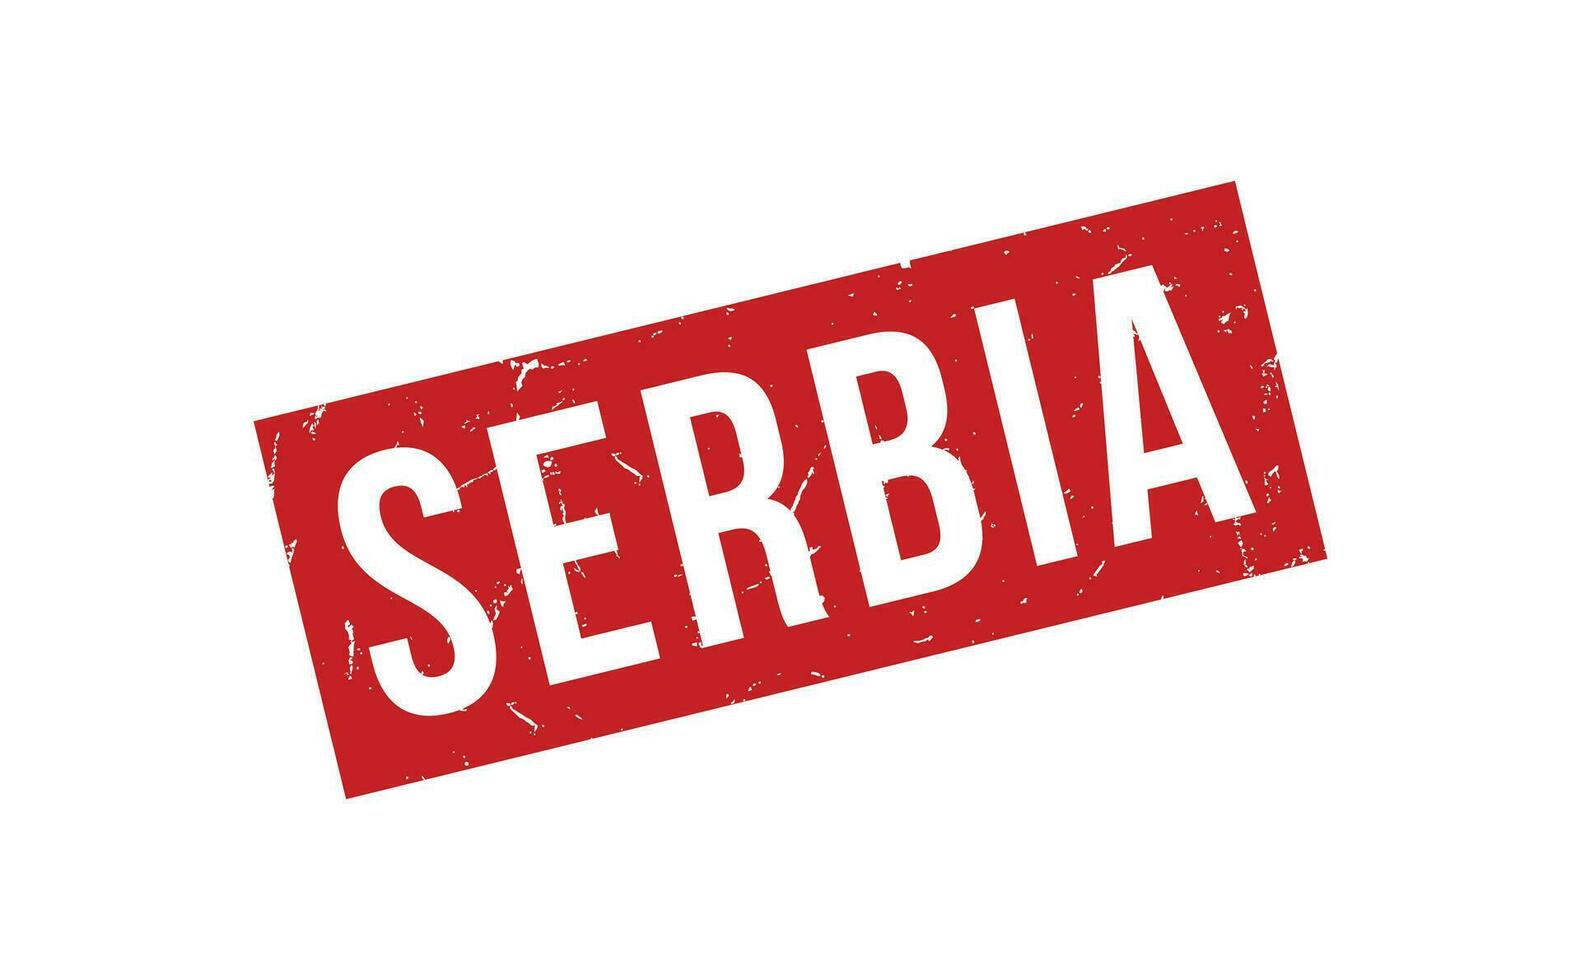 serbia sudd stämpel täta vektor